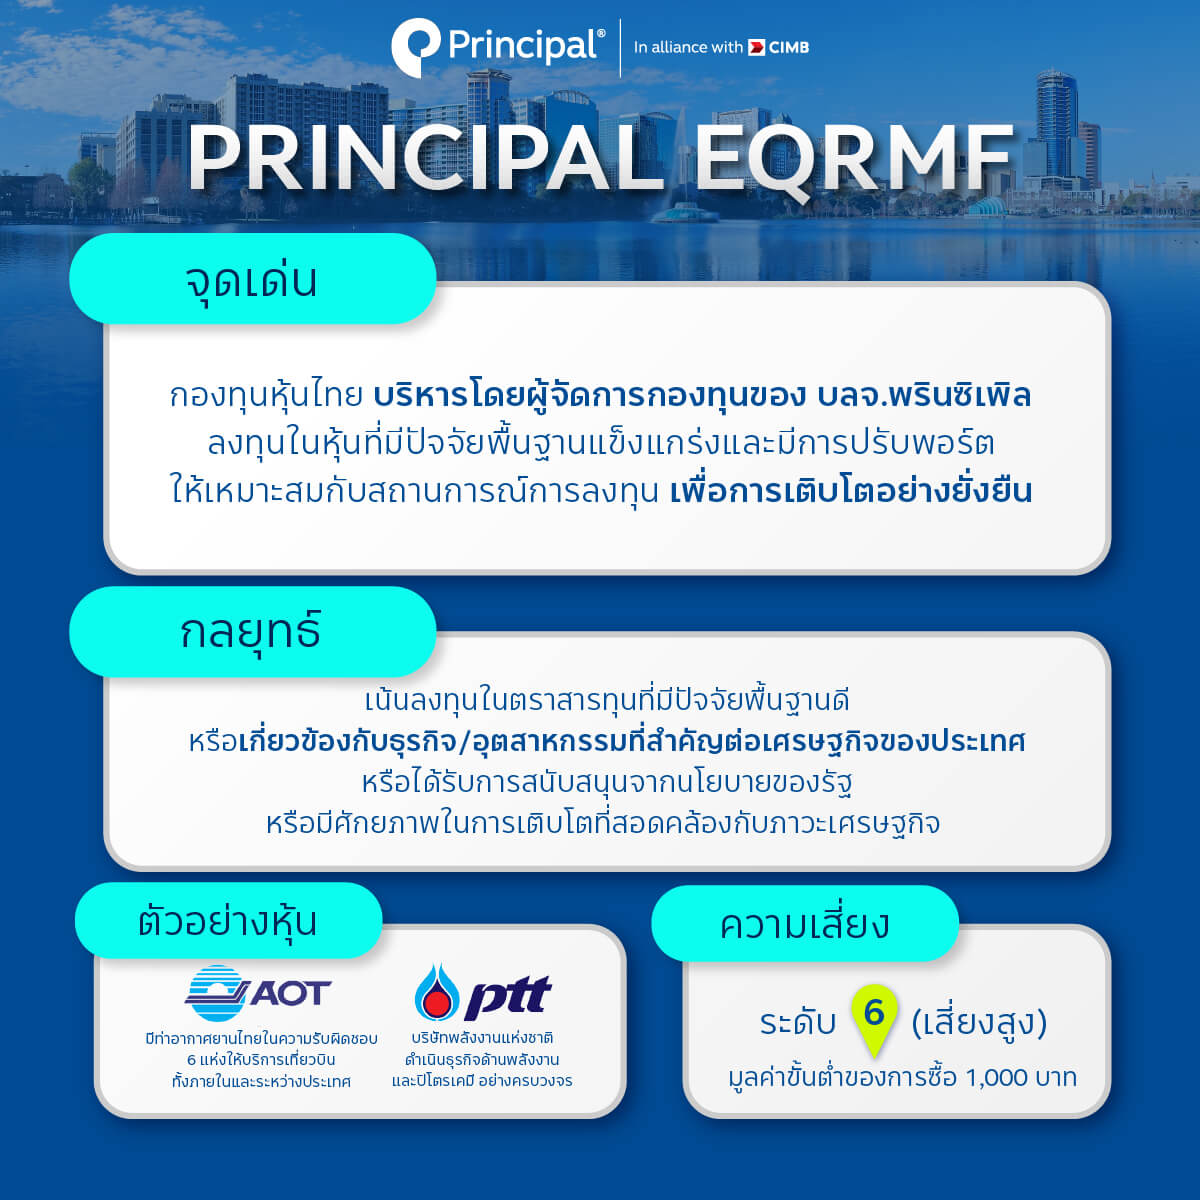 กองทุน Principal EQRMF